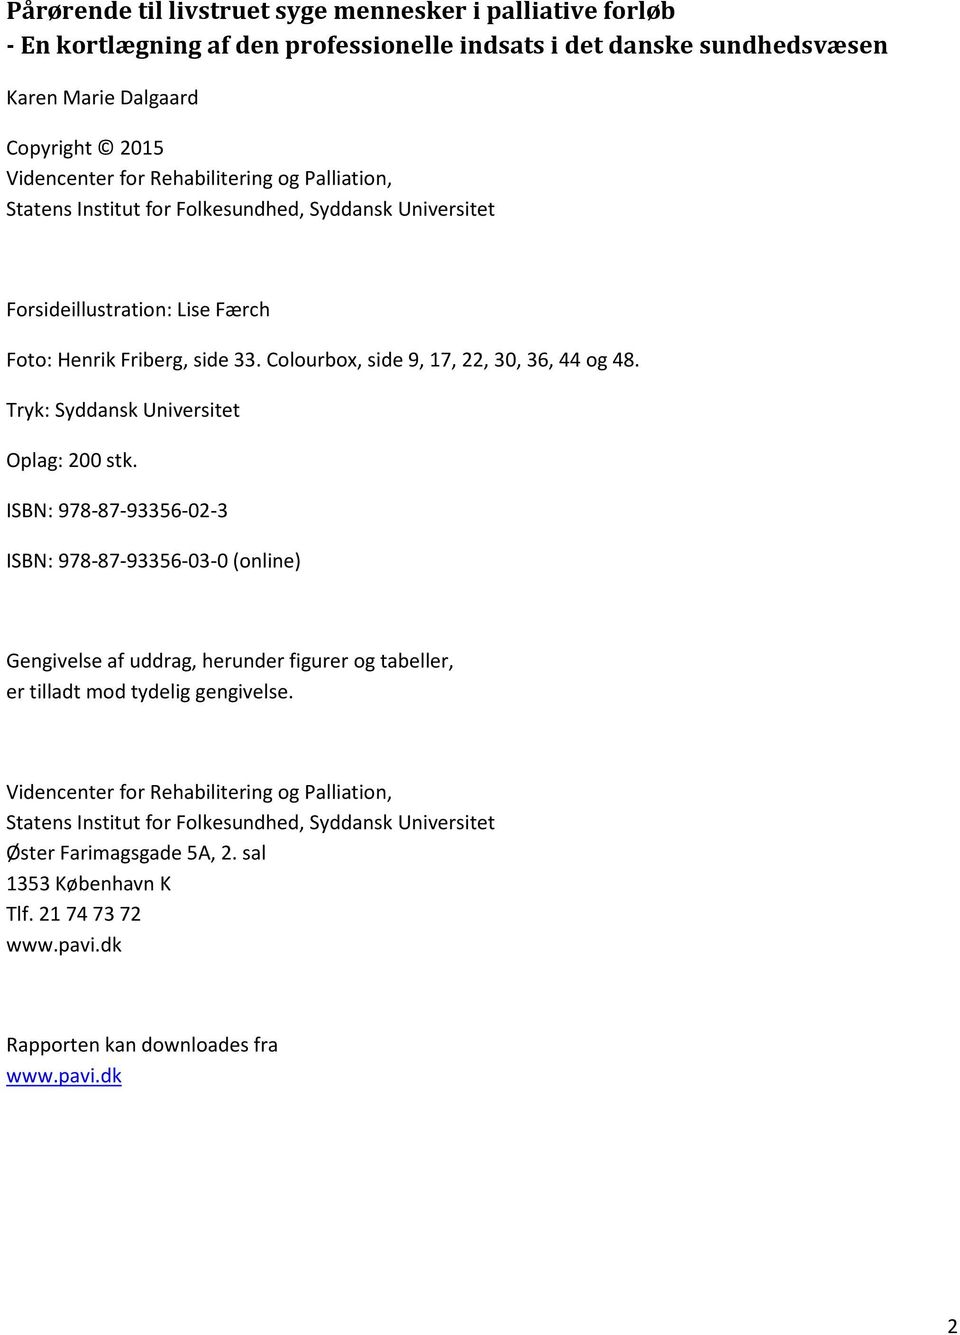 Tryk: Syddansk Universitet Oplag: 200 stk. ISBN: 978-87-93356-02-3 ISBN: 978-87-93356-03-0 (online) Gengivelse af uddrag, herunder figurer og tabeller, er tilladt mod tydelig gengivelse.